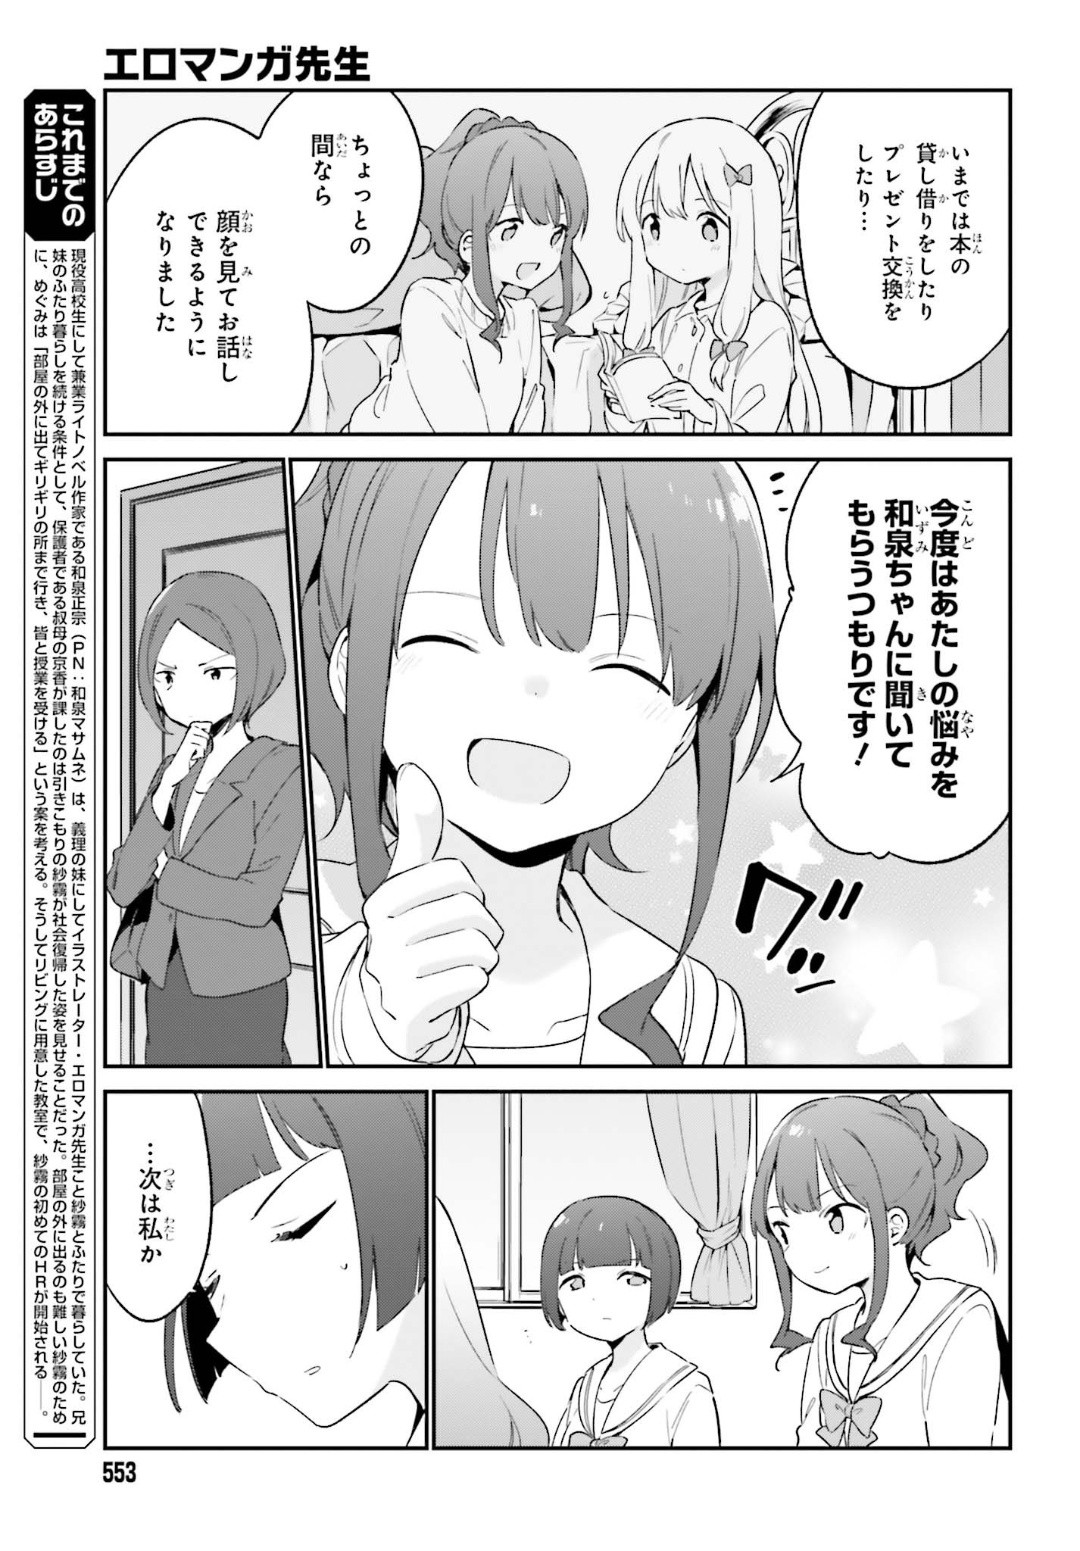 Ero Manga Sensei - Chapter 64 - Page 5